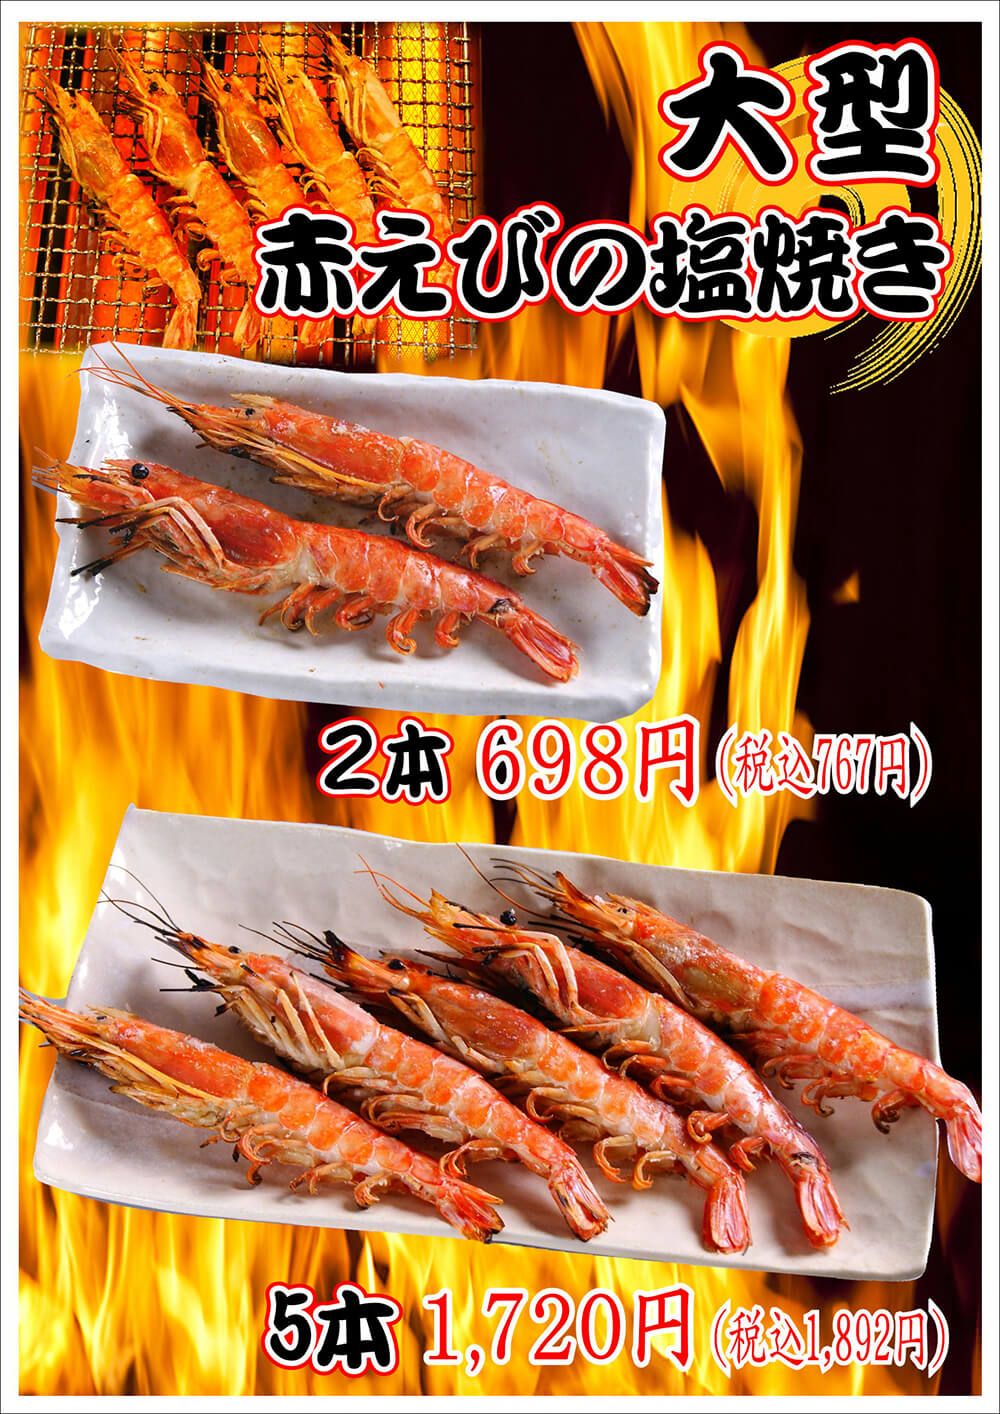 grilled red shrimp